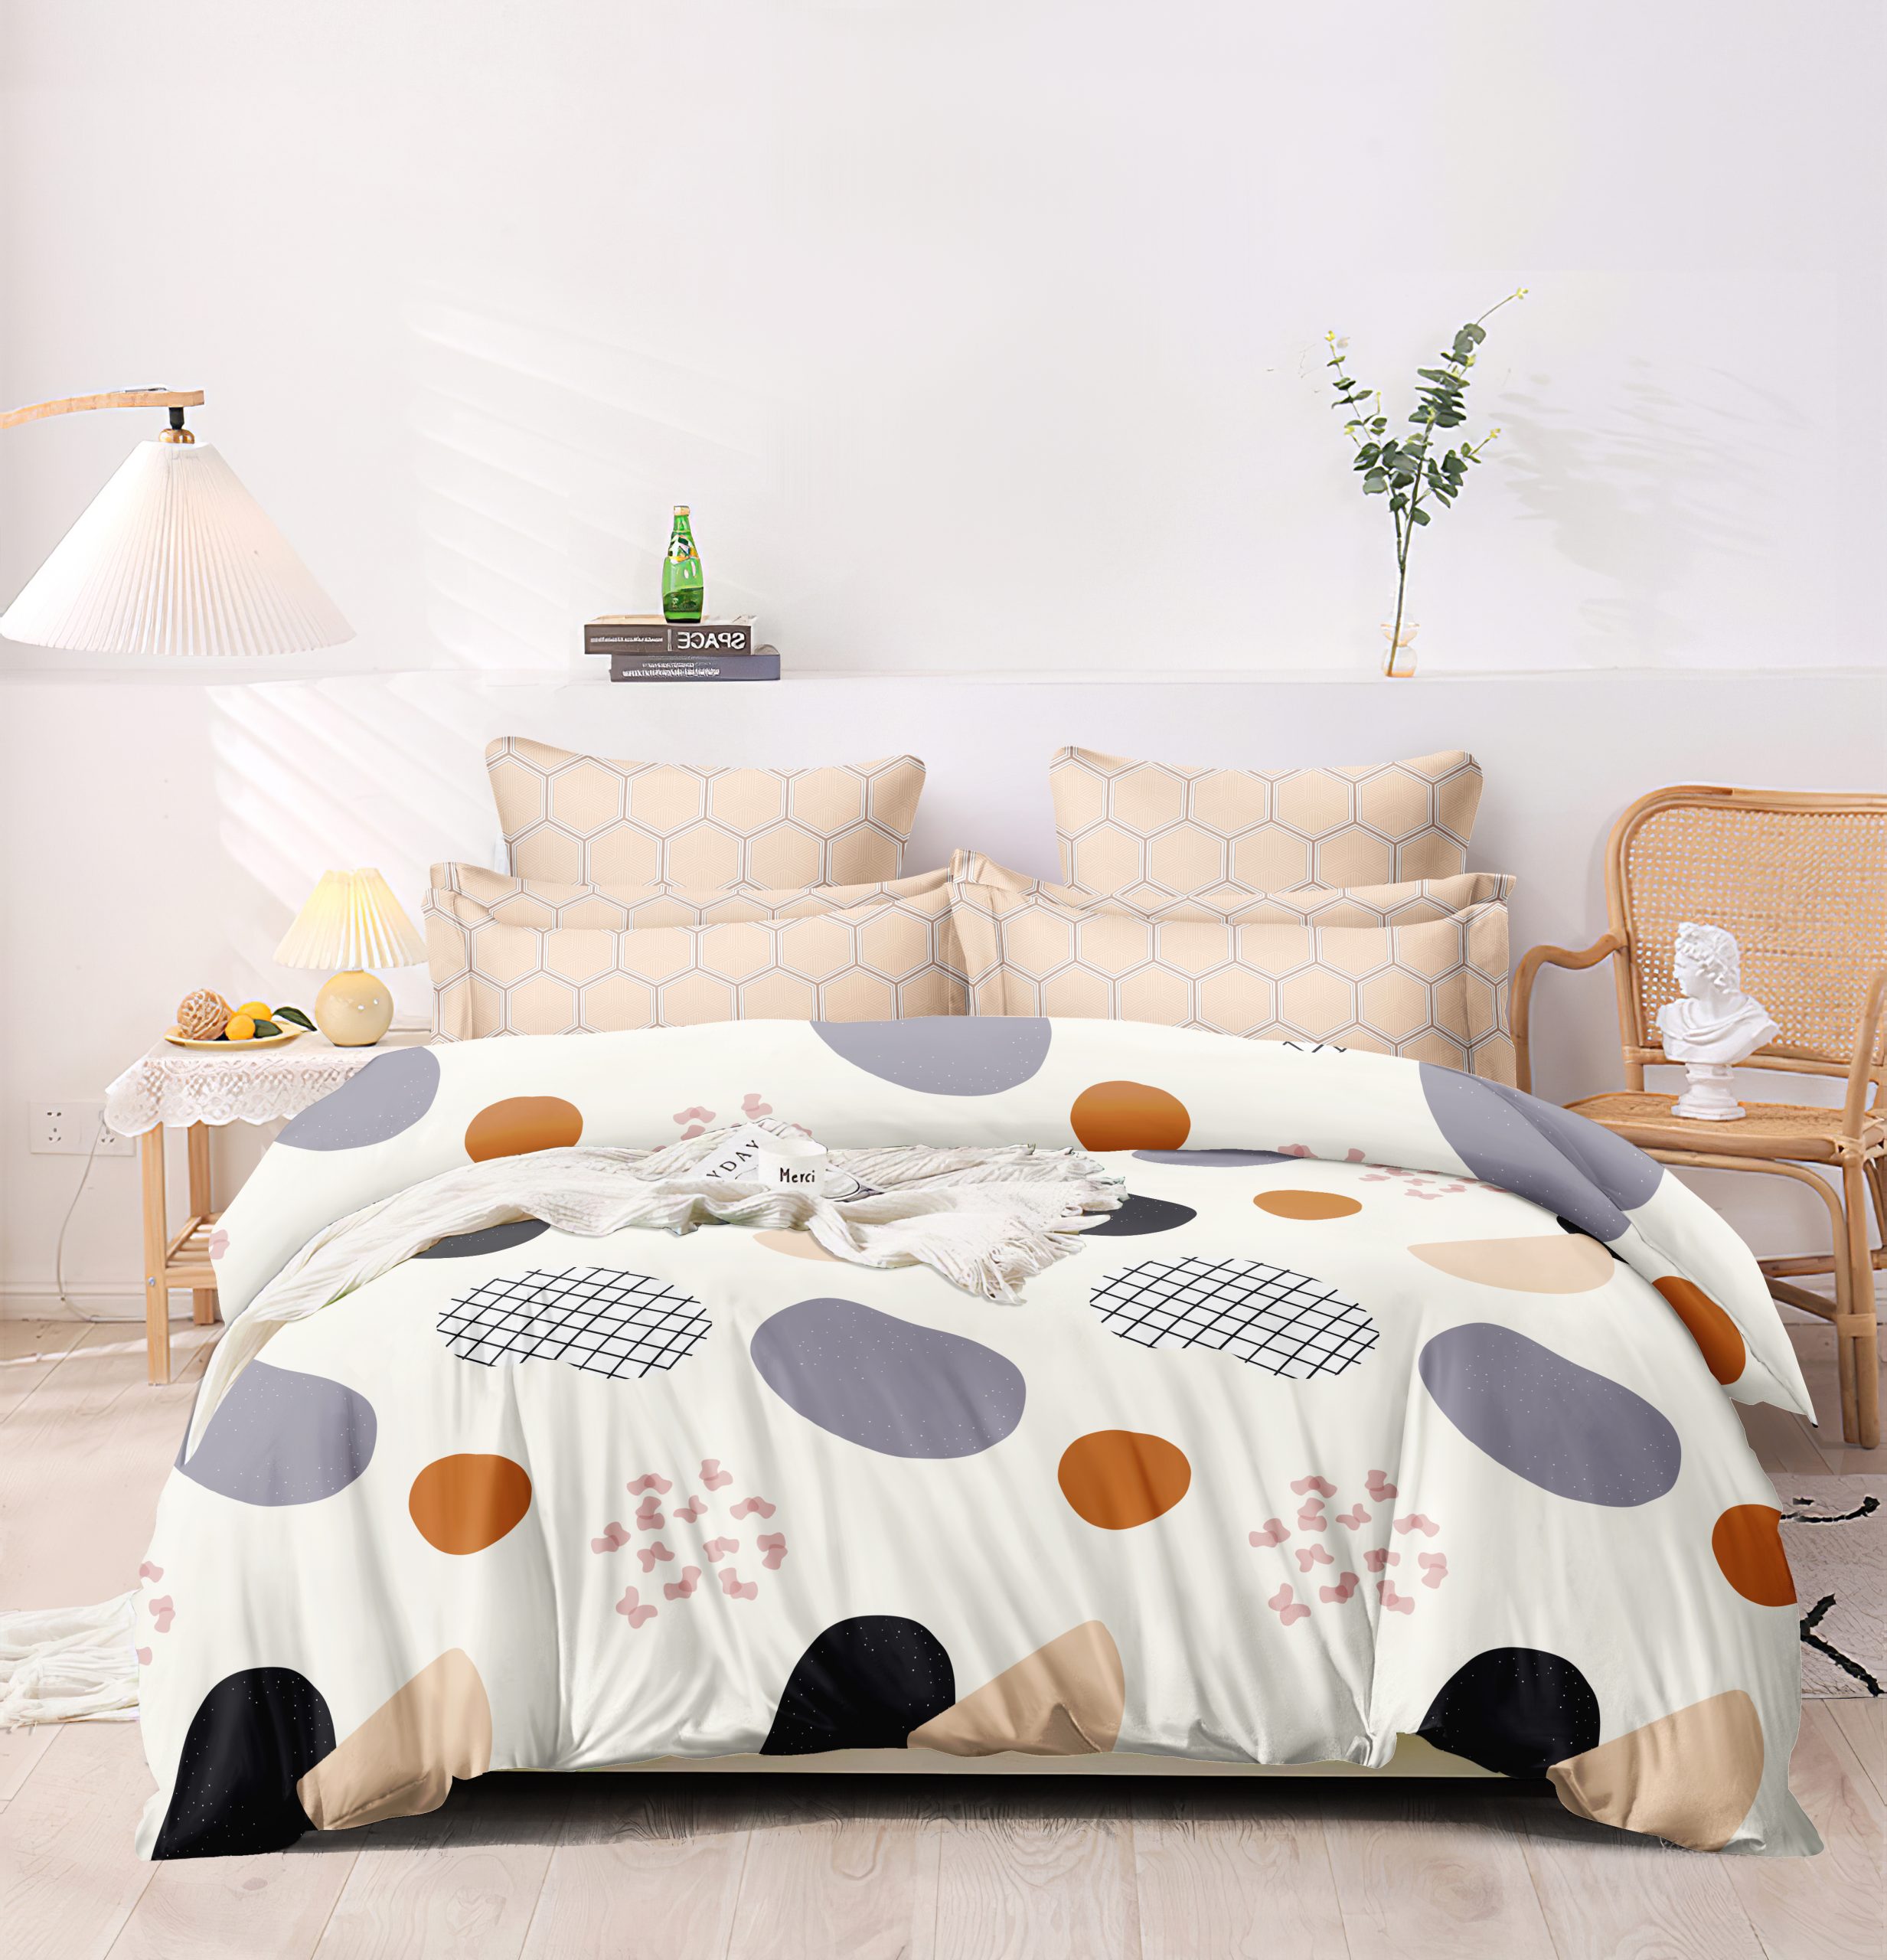 Homewards Retro Design Double Bed Comforter – Multicolor